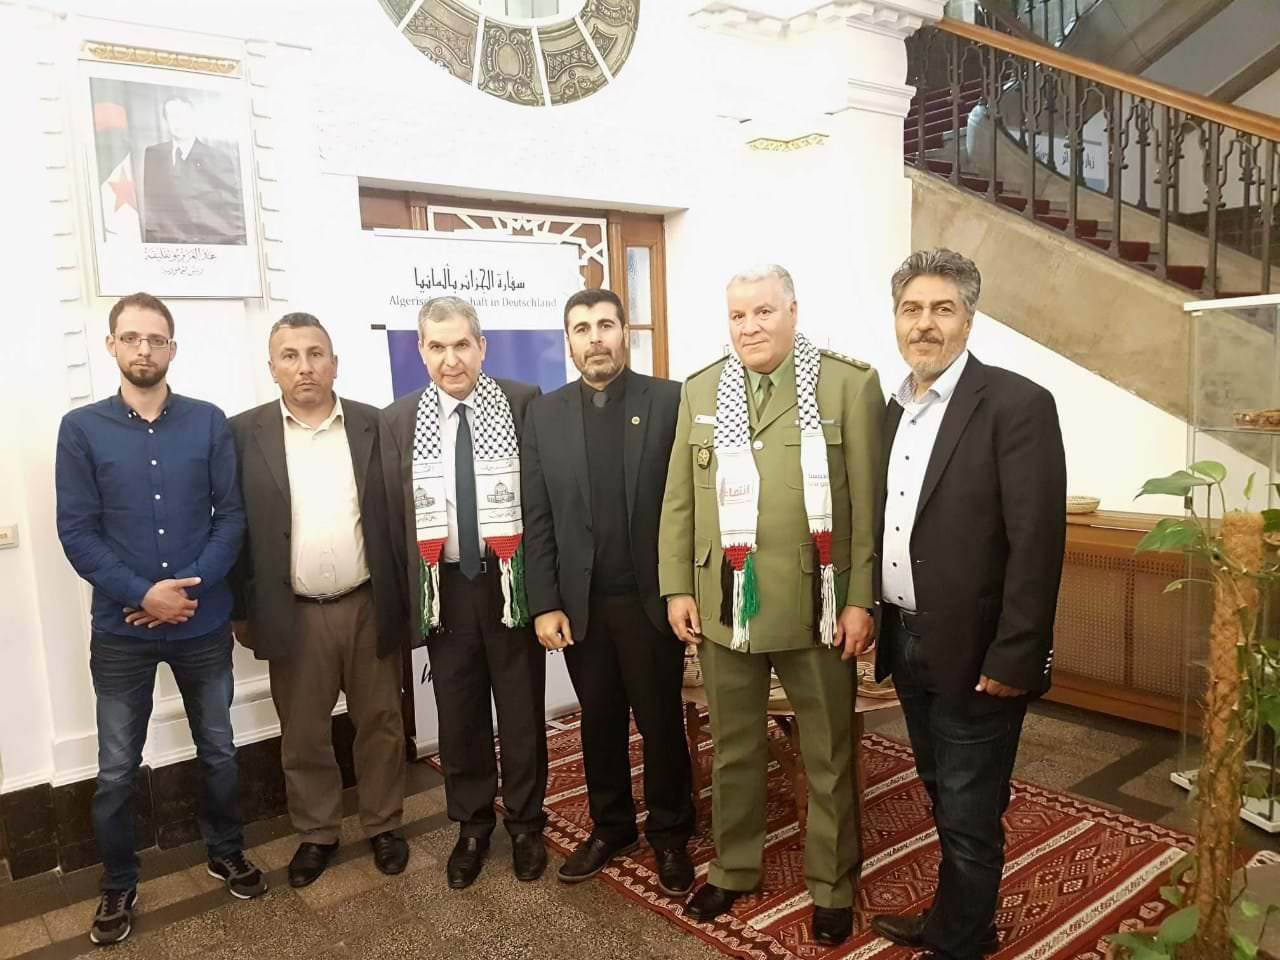 وفد من التّجمّع الفلسطيني في المانيا  يقدم واجب العزاء في السّفارة الجزائريّة